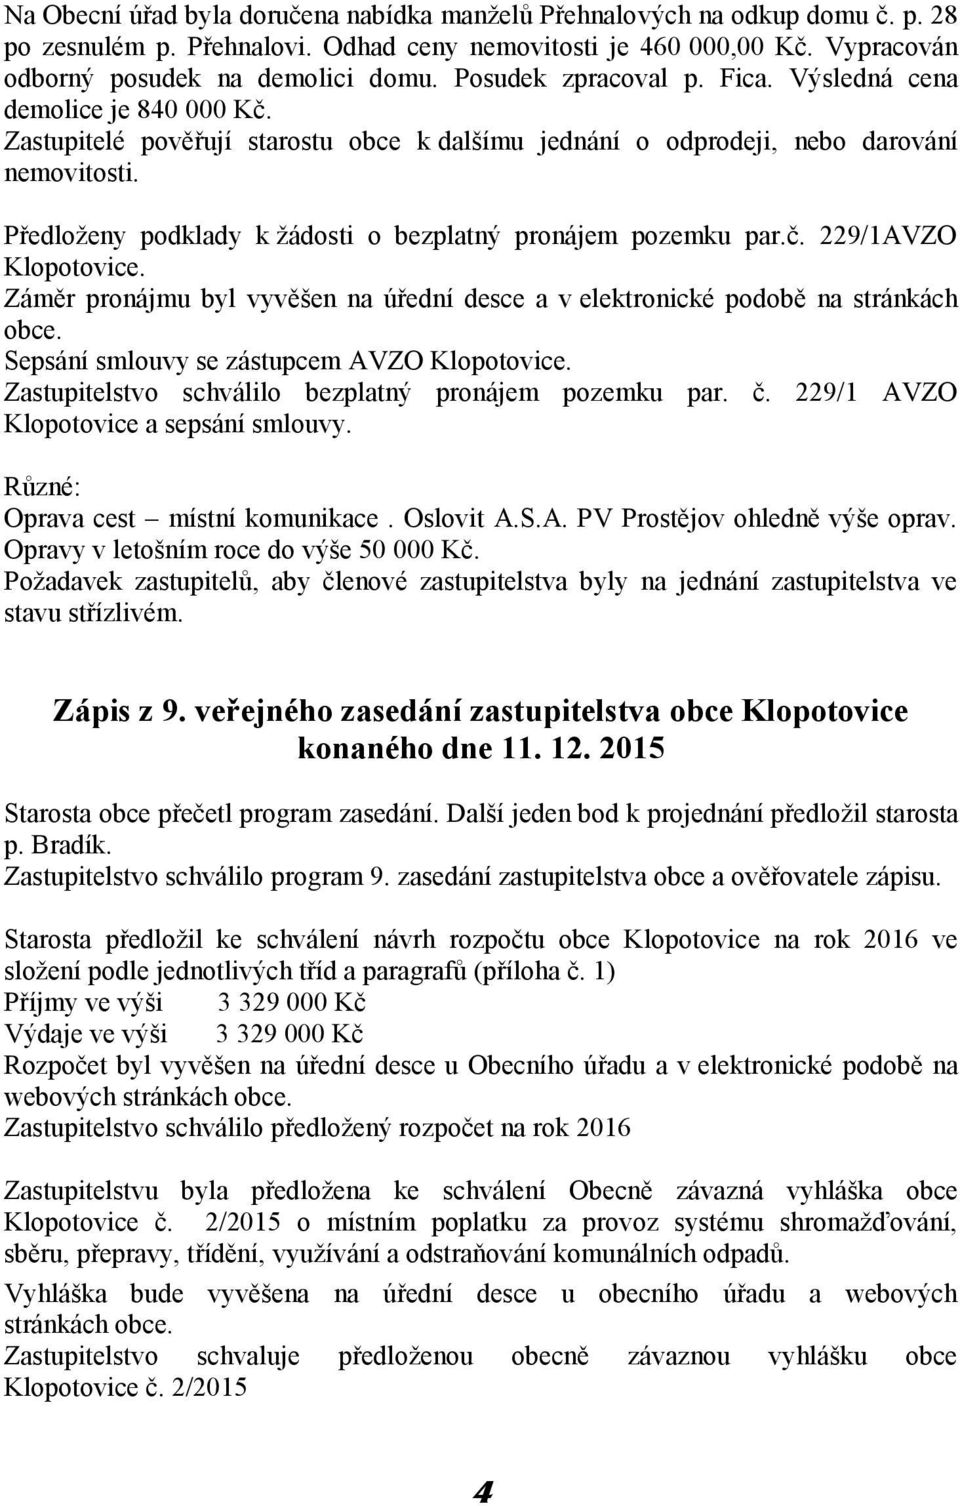 Předloženy podklady k žádosti o bezplatný pronájem pozemku par.č. 229/1AVZO Klopotovice. Záměr pronájmu byl vyvěšen na úřední desce a v elektronické podobě na stránkách obce.